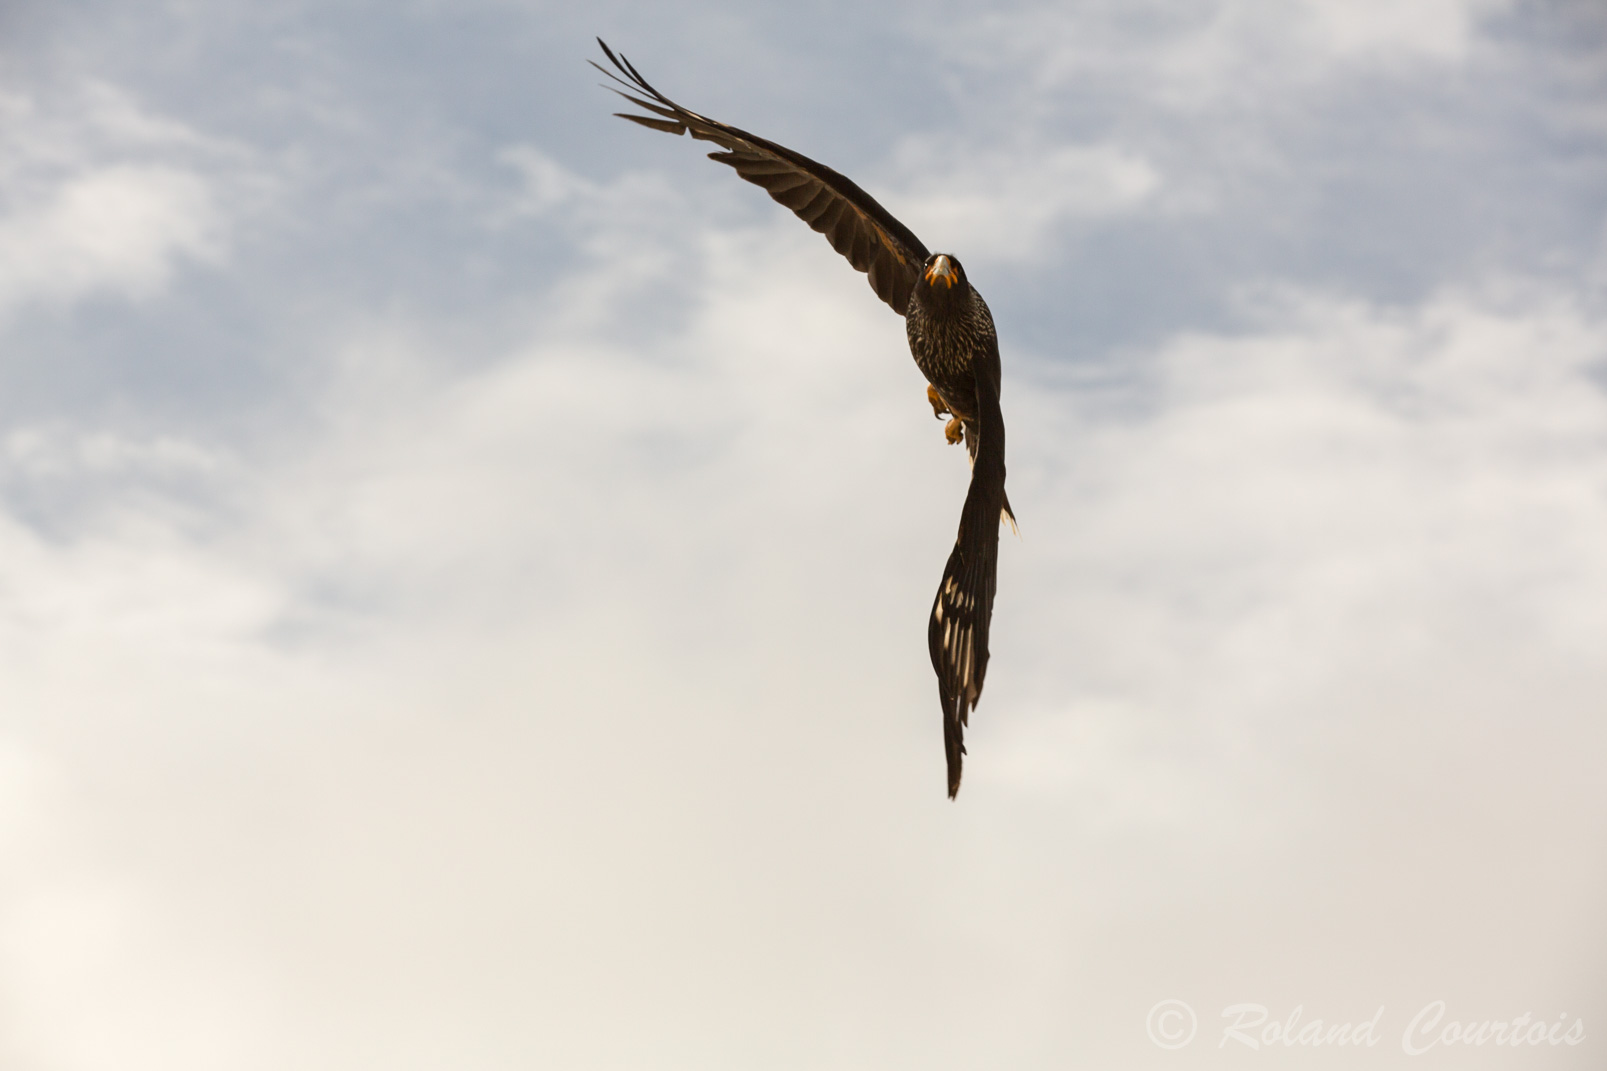 Le Caracara austral a un vol puissant et rapide, effectué avec des battements réguliers et énergiques.